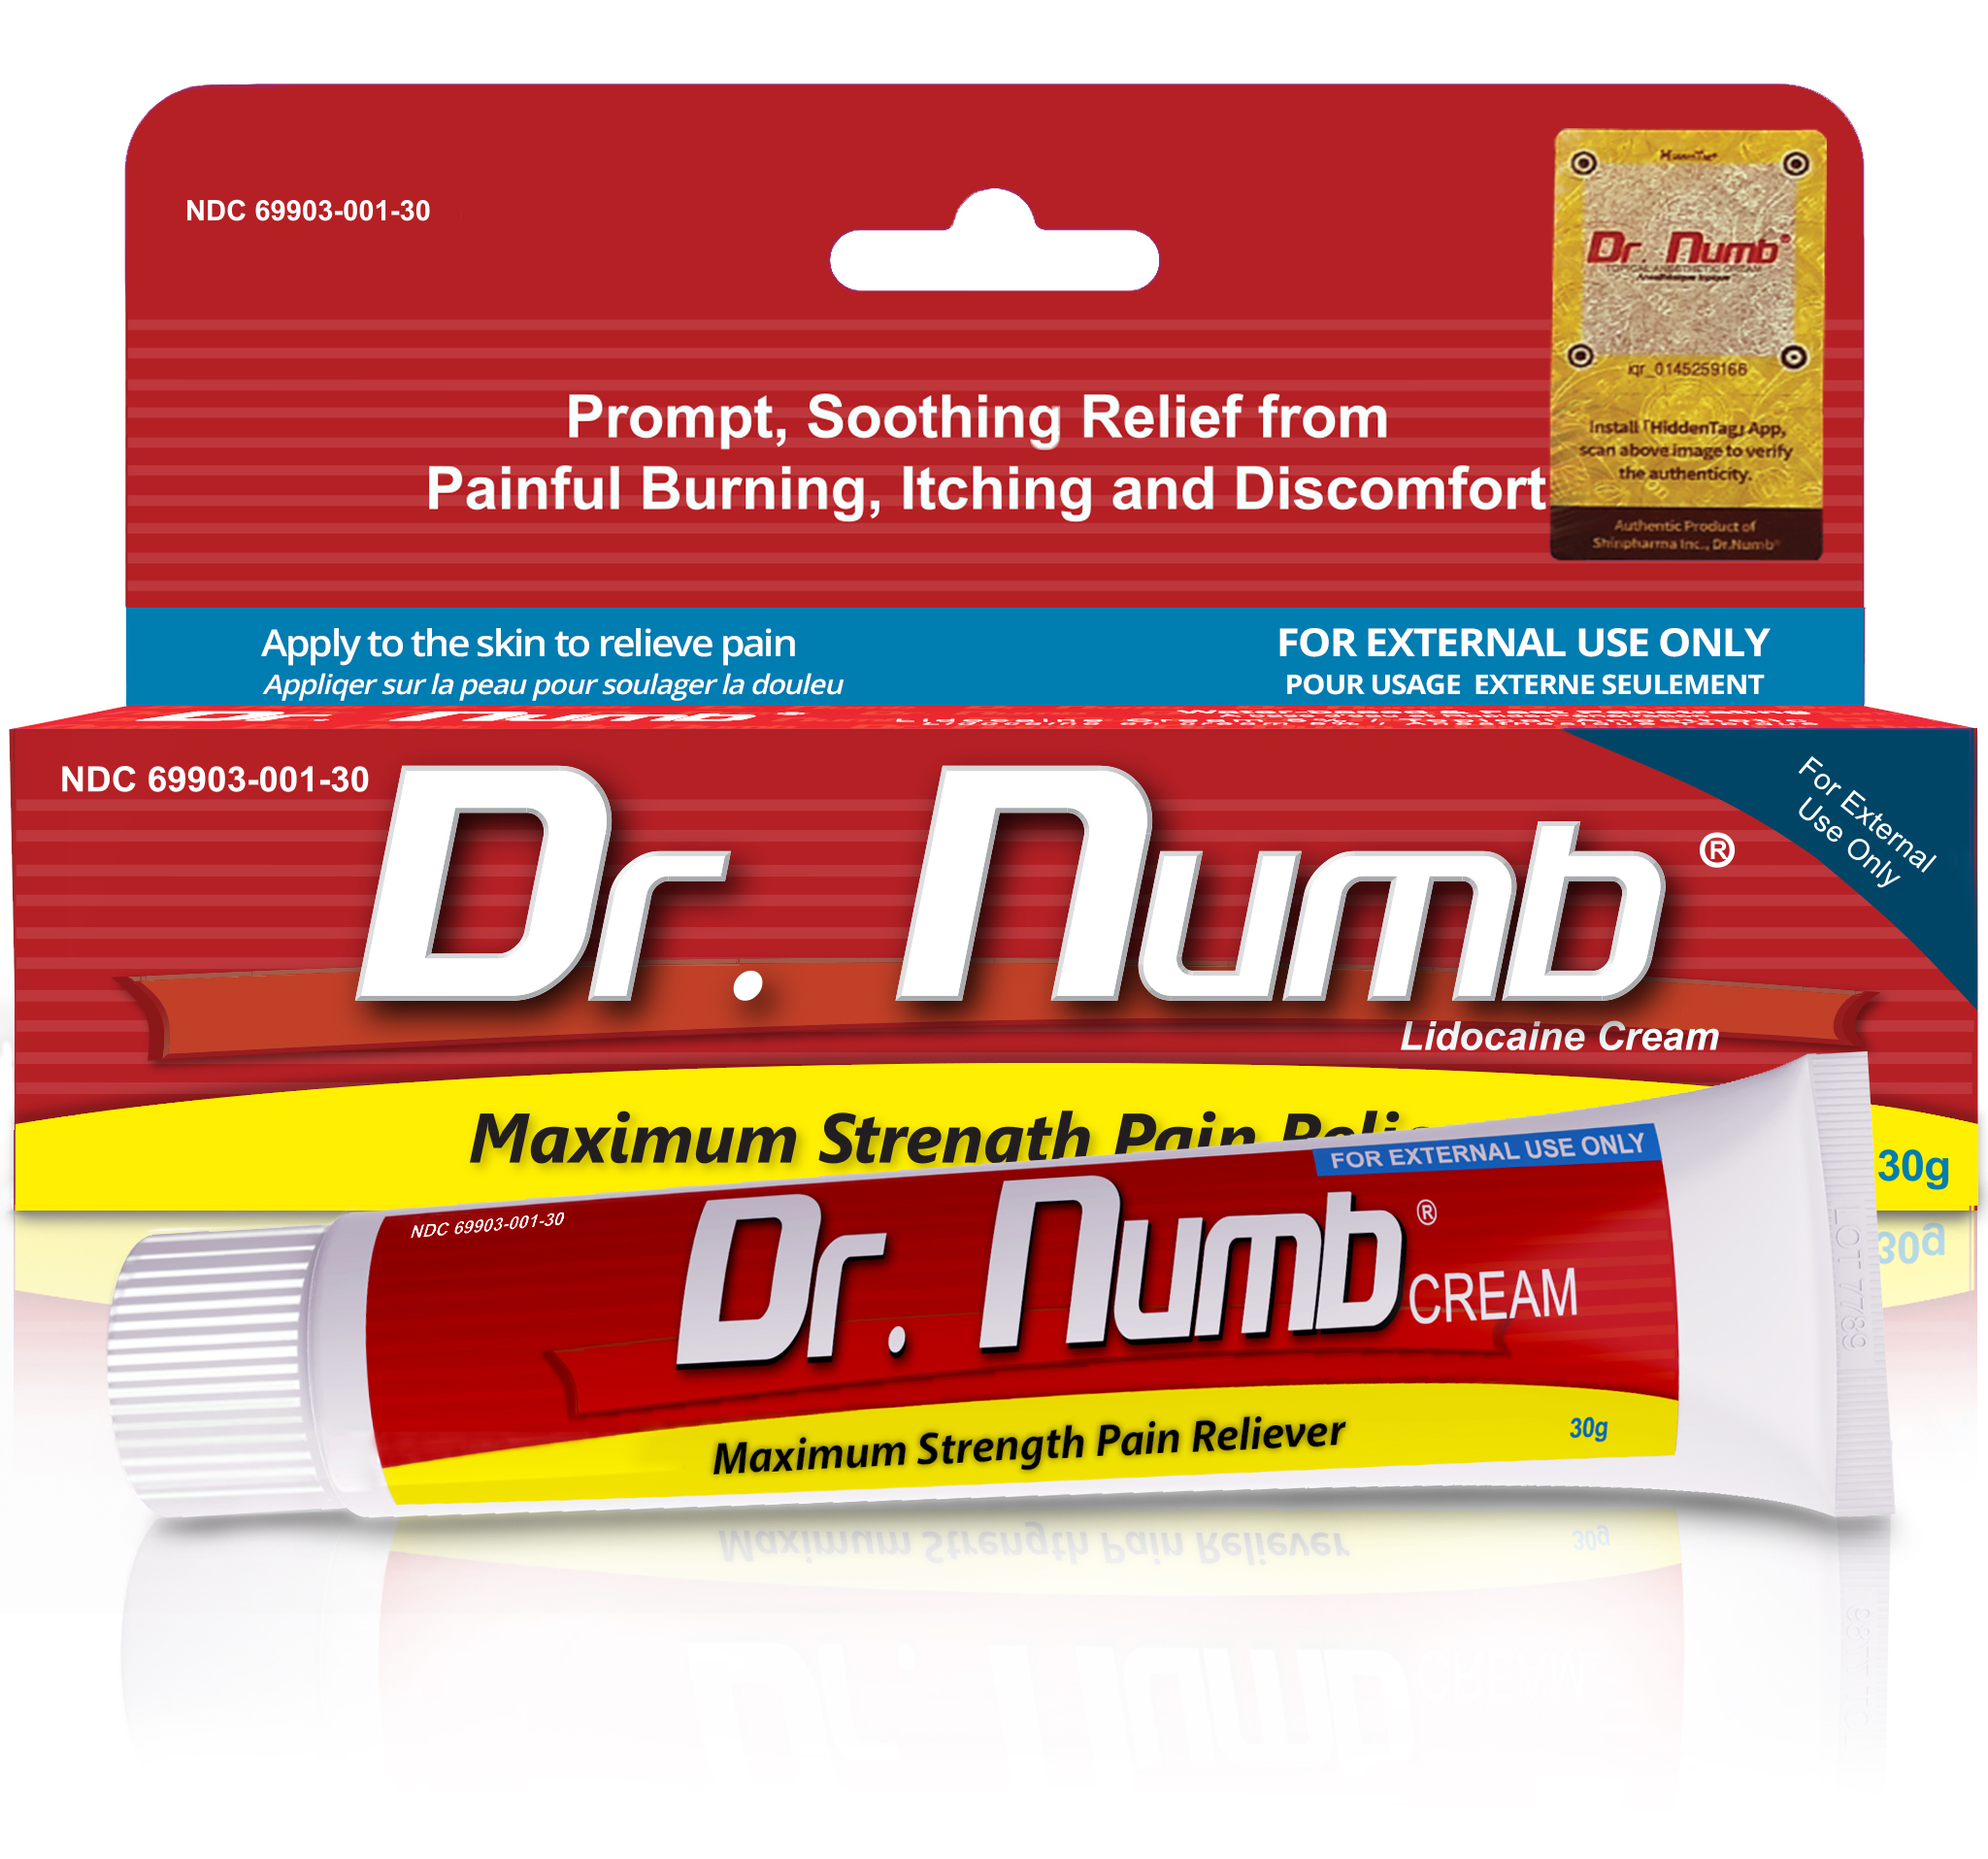 01. Dr. Numb 5% 30g